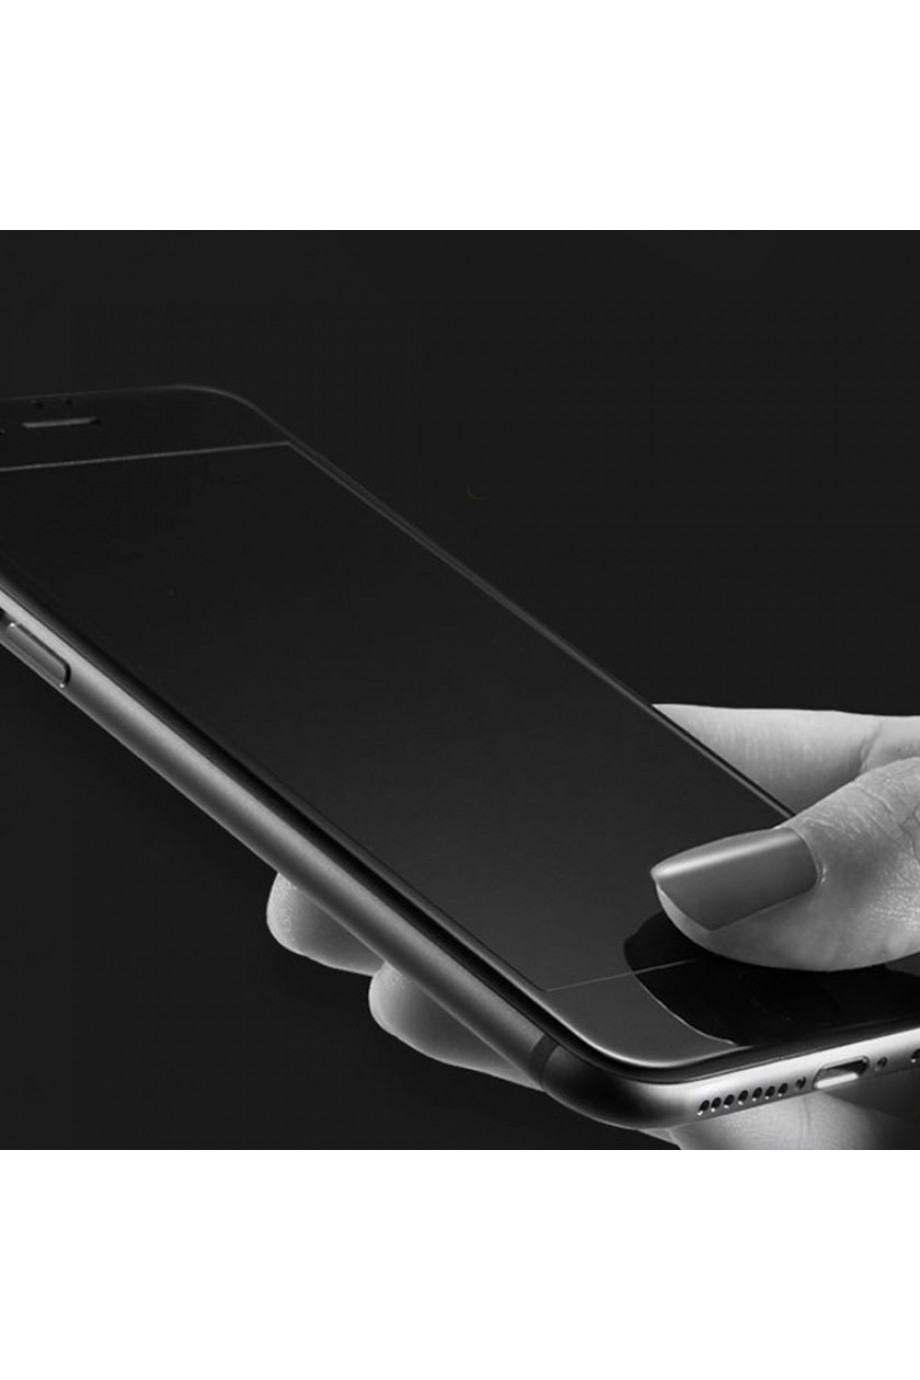 Защитное стекло 5D Mikomo для iPhone 7, черная рамка, полный клей